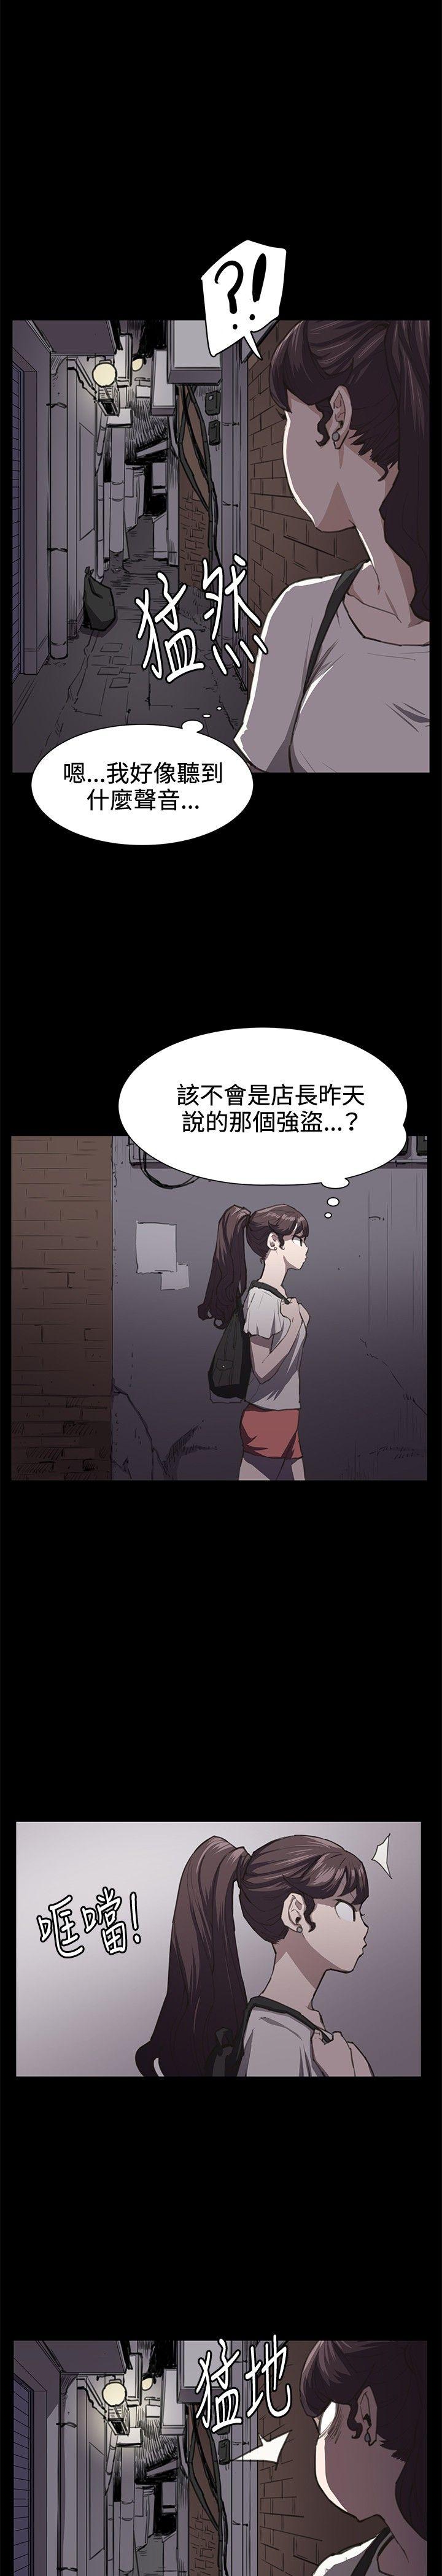 韩国污漫画 深夜便利店 第21话 15